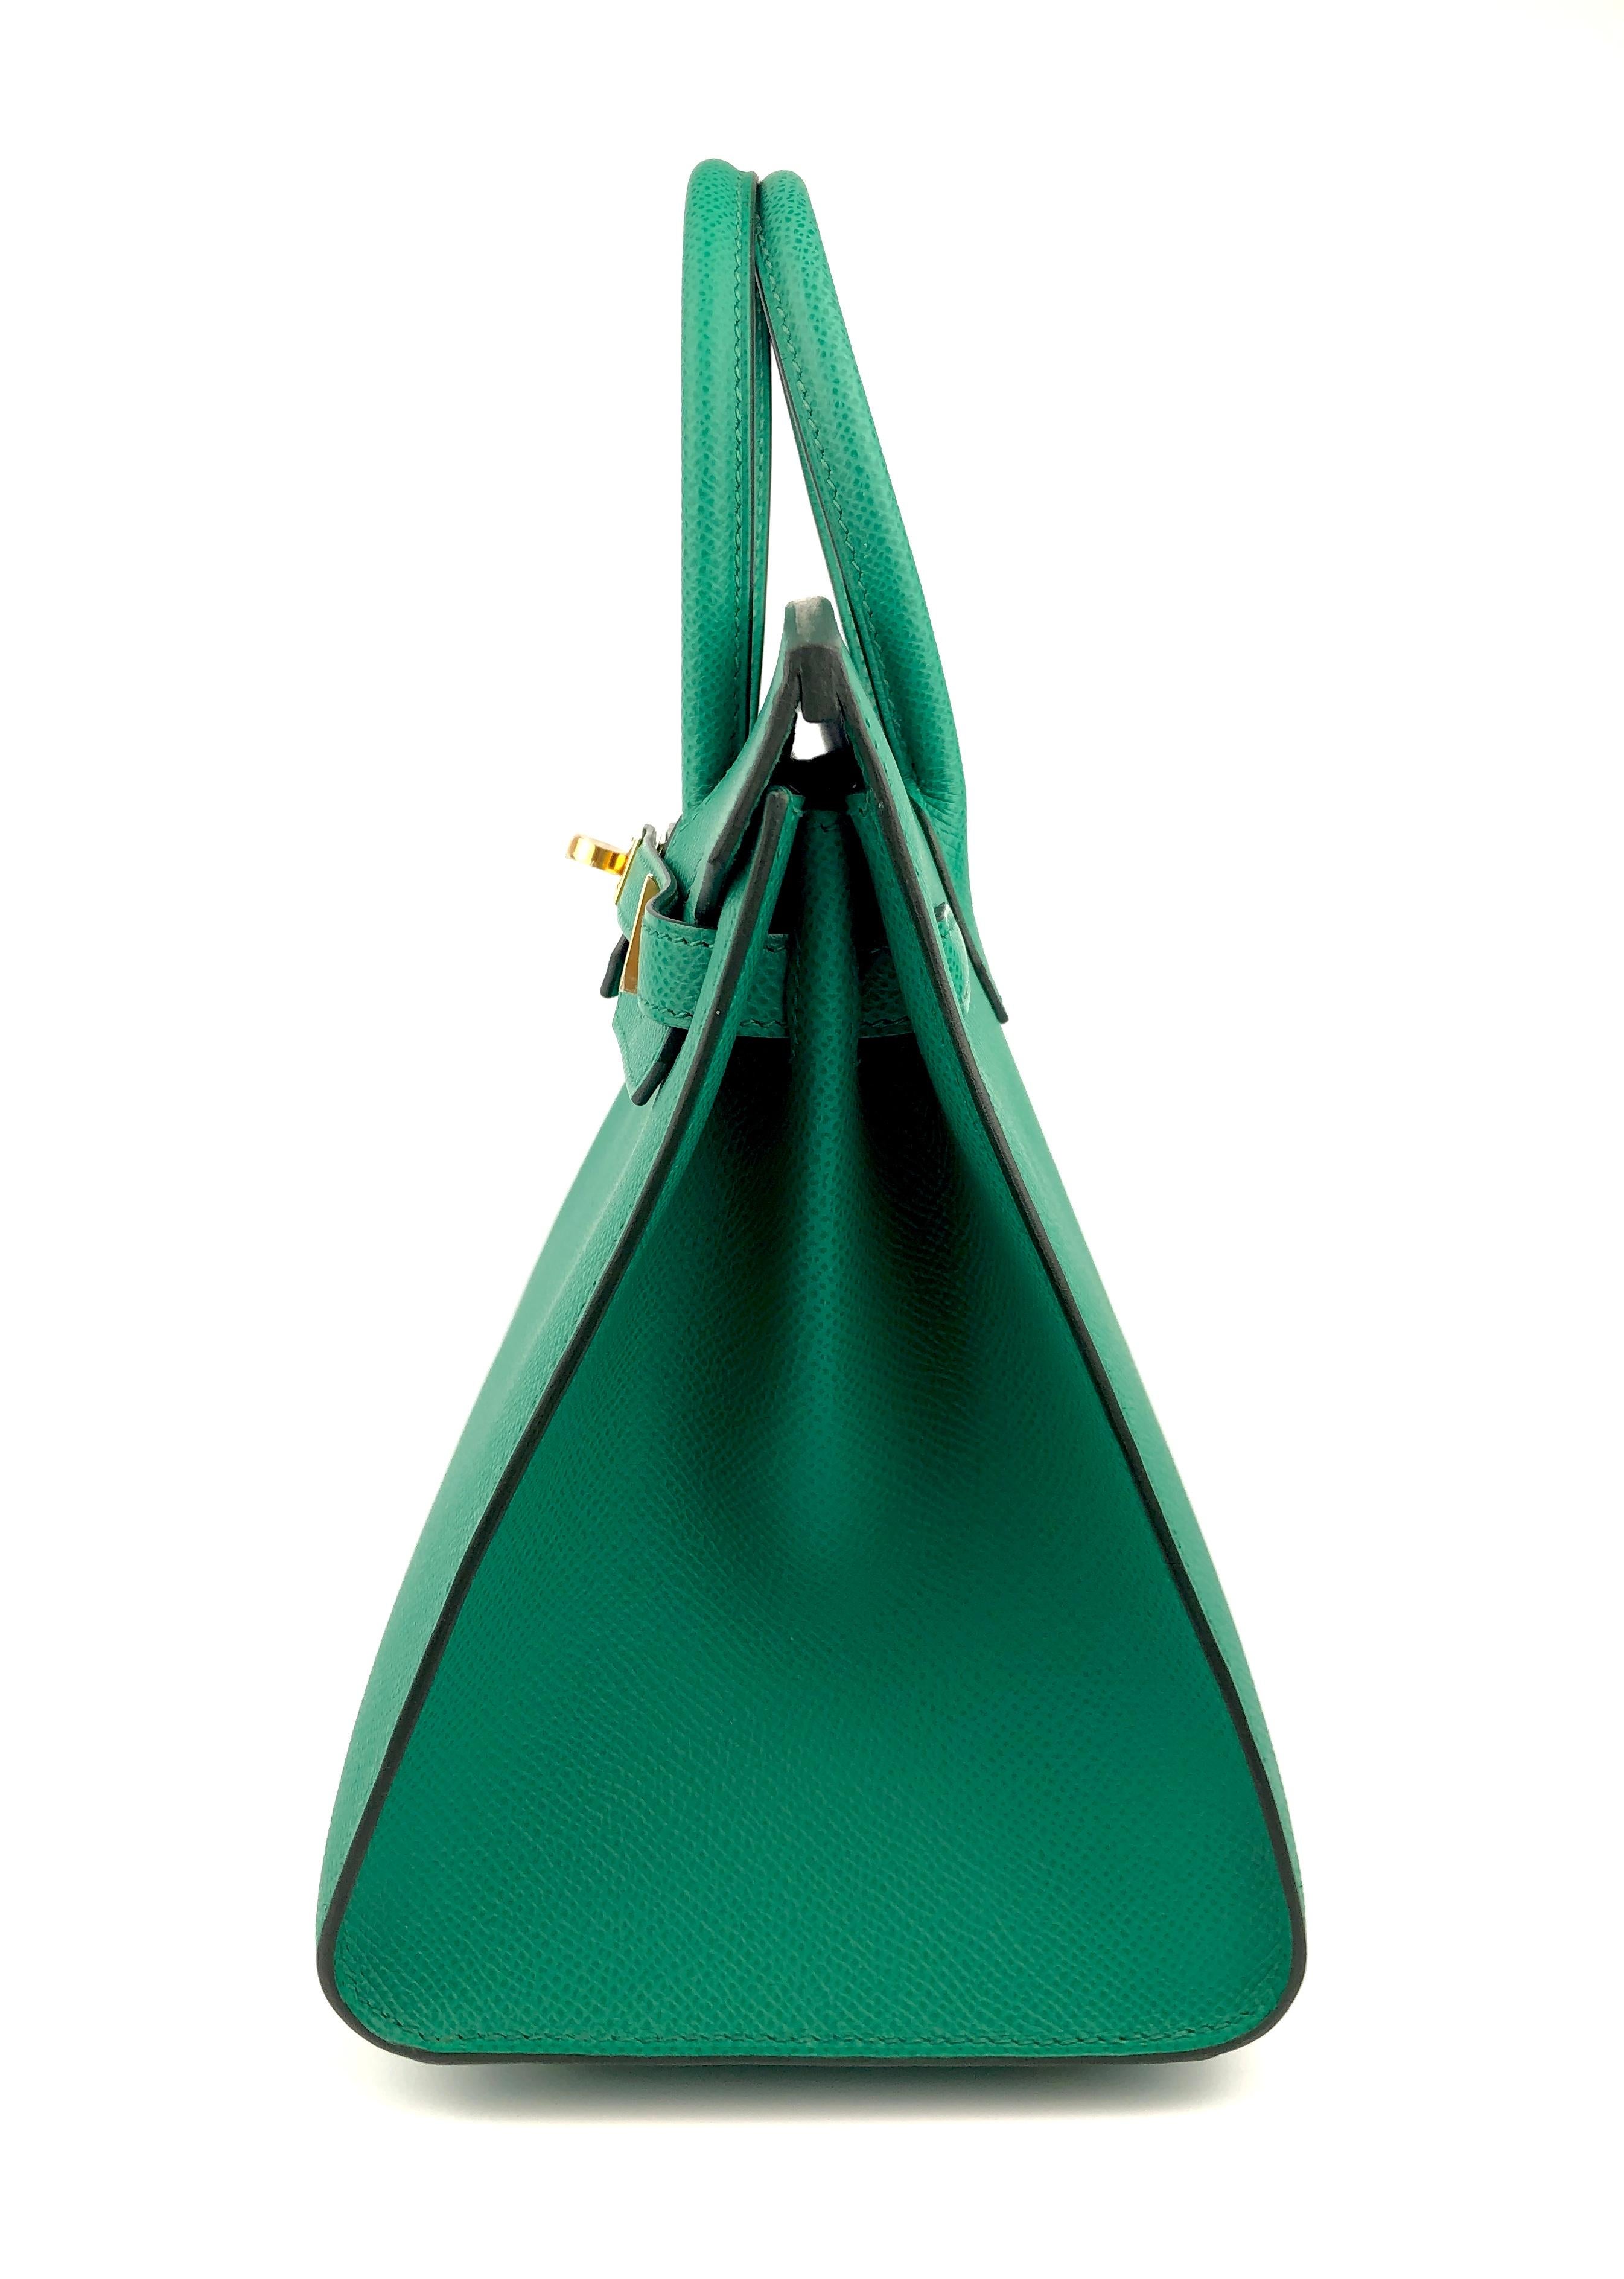 Blue Hermes Birkin 25 Sellier Green Vert Jade Epsom Gold Hardware 2021 NEW VERY RARE